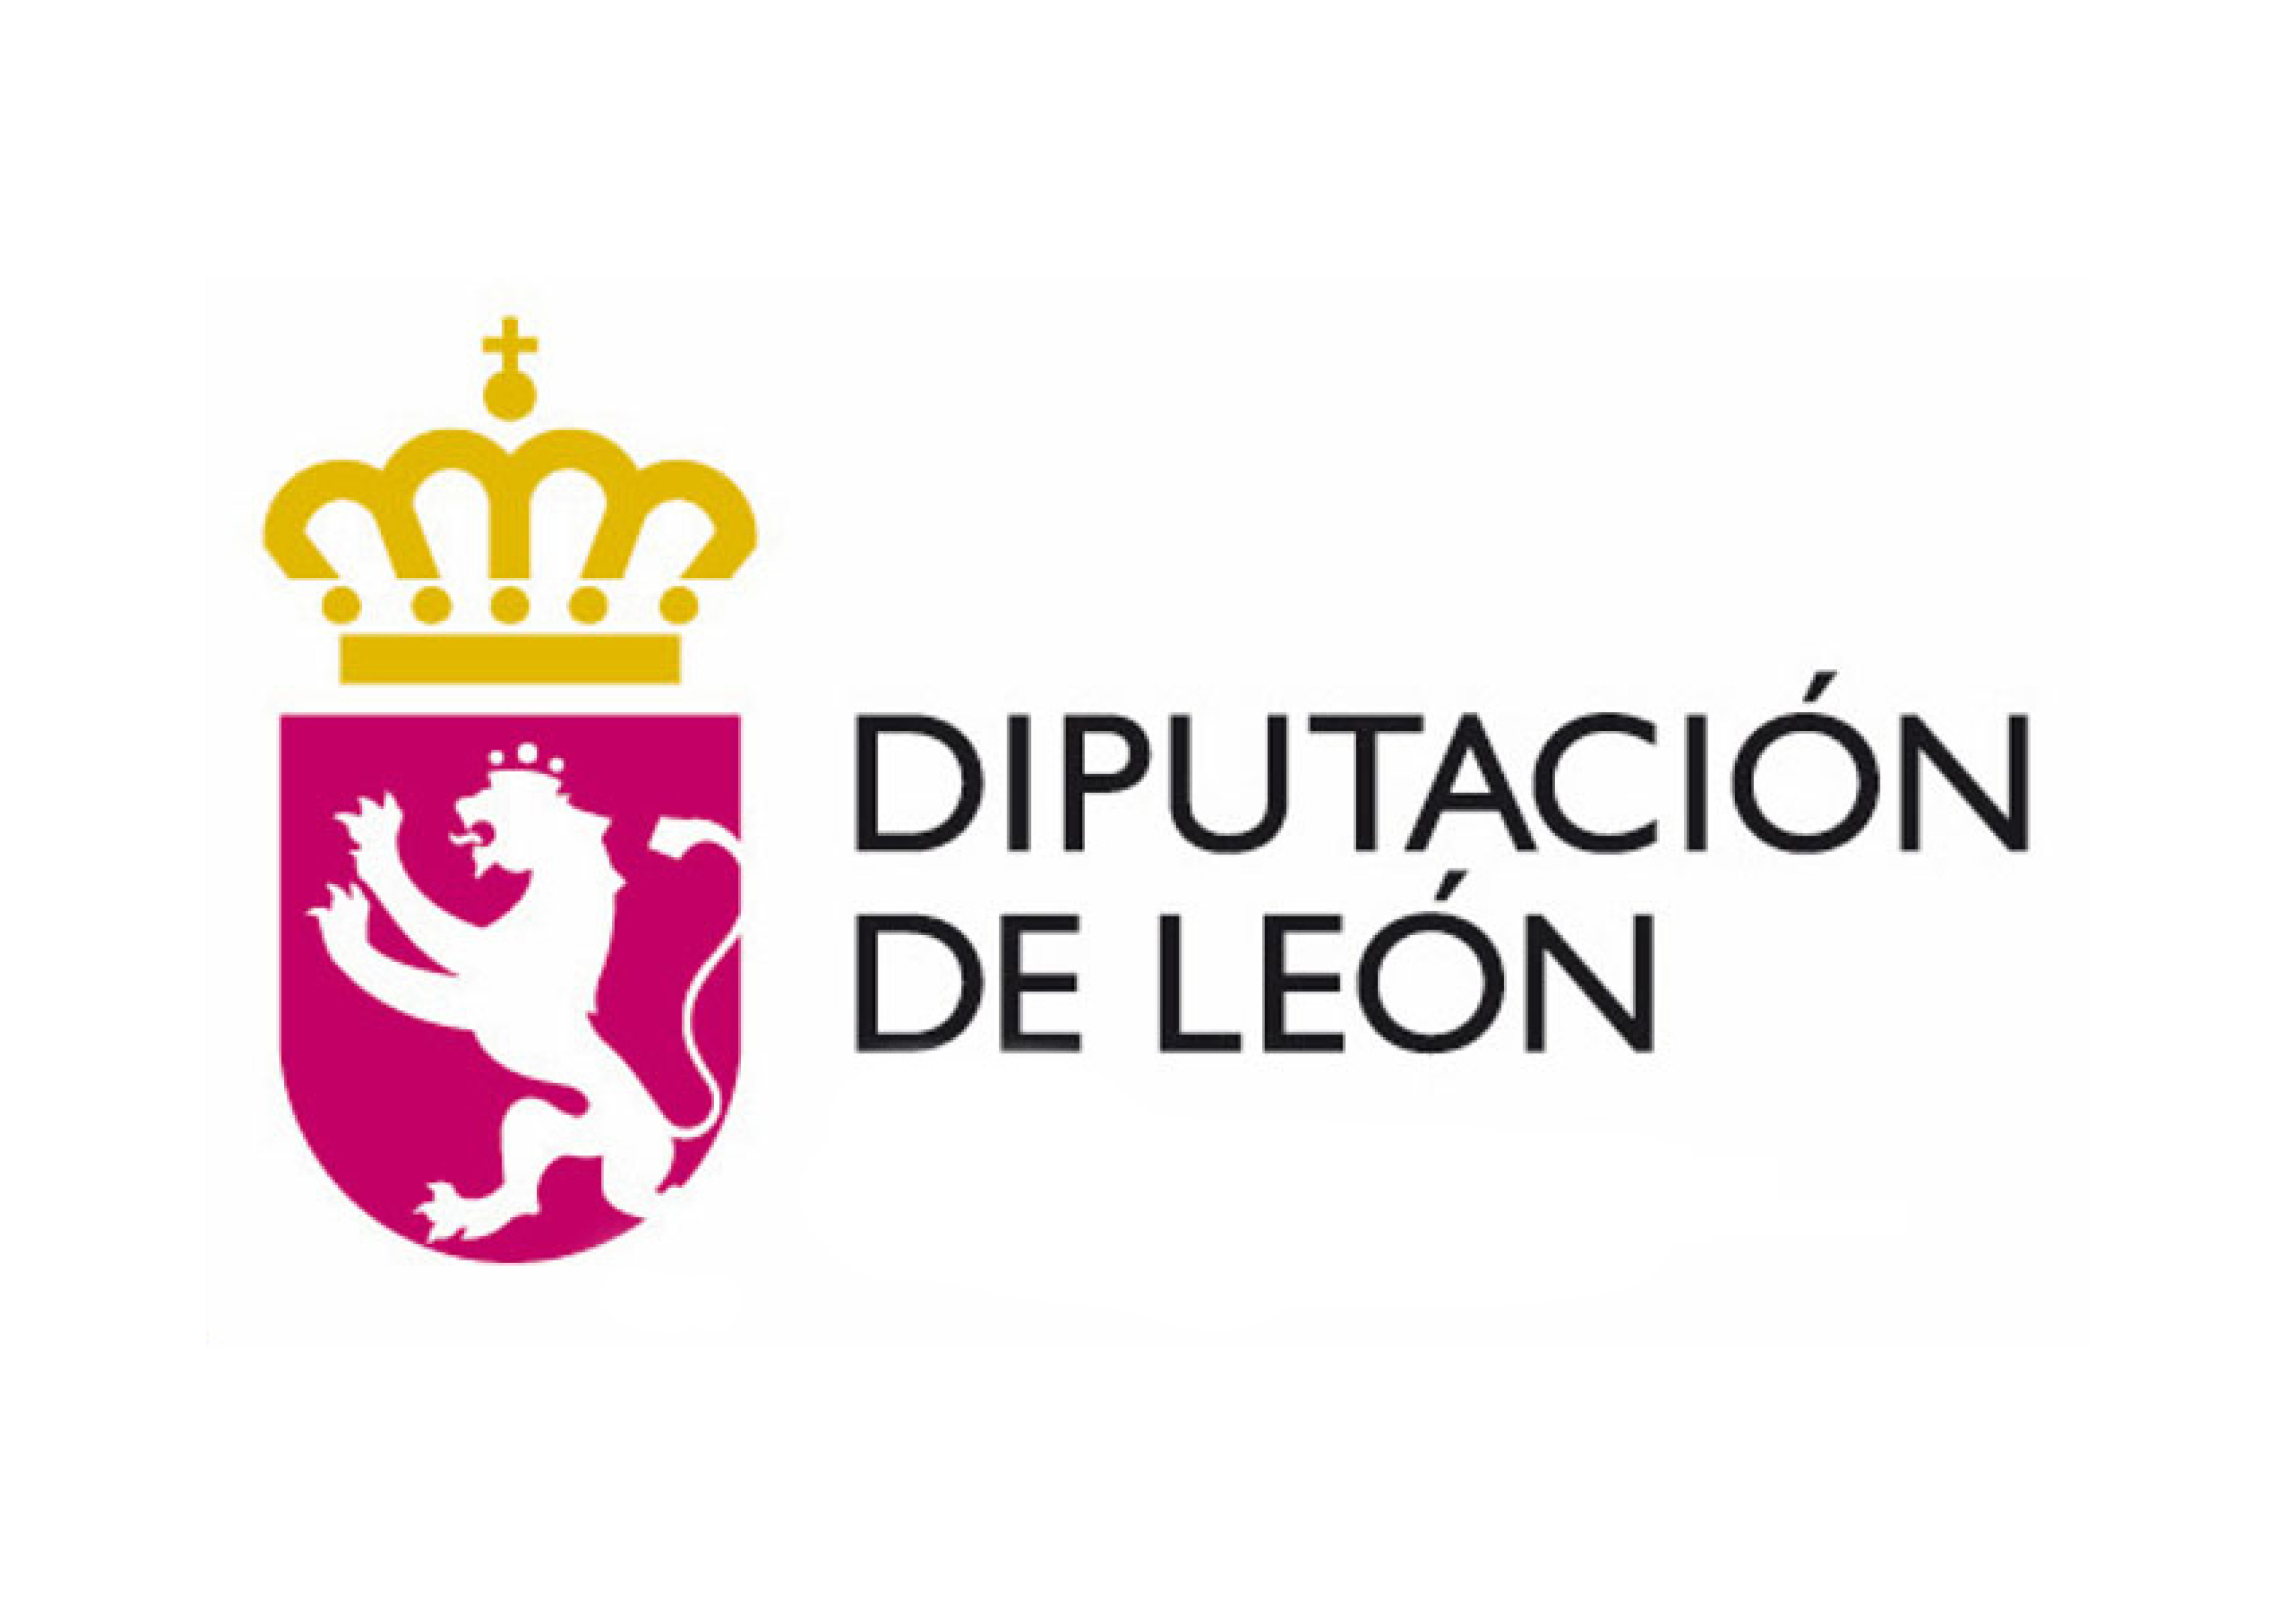 Diputación de León logotipo